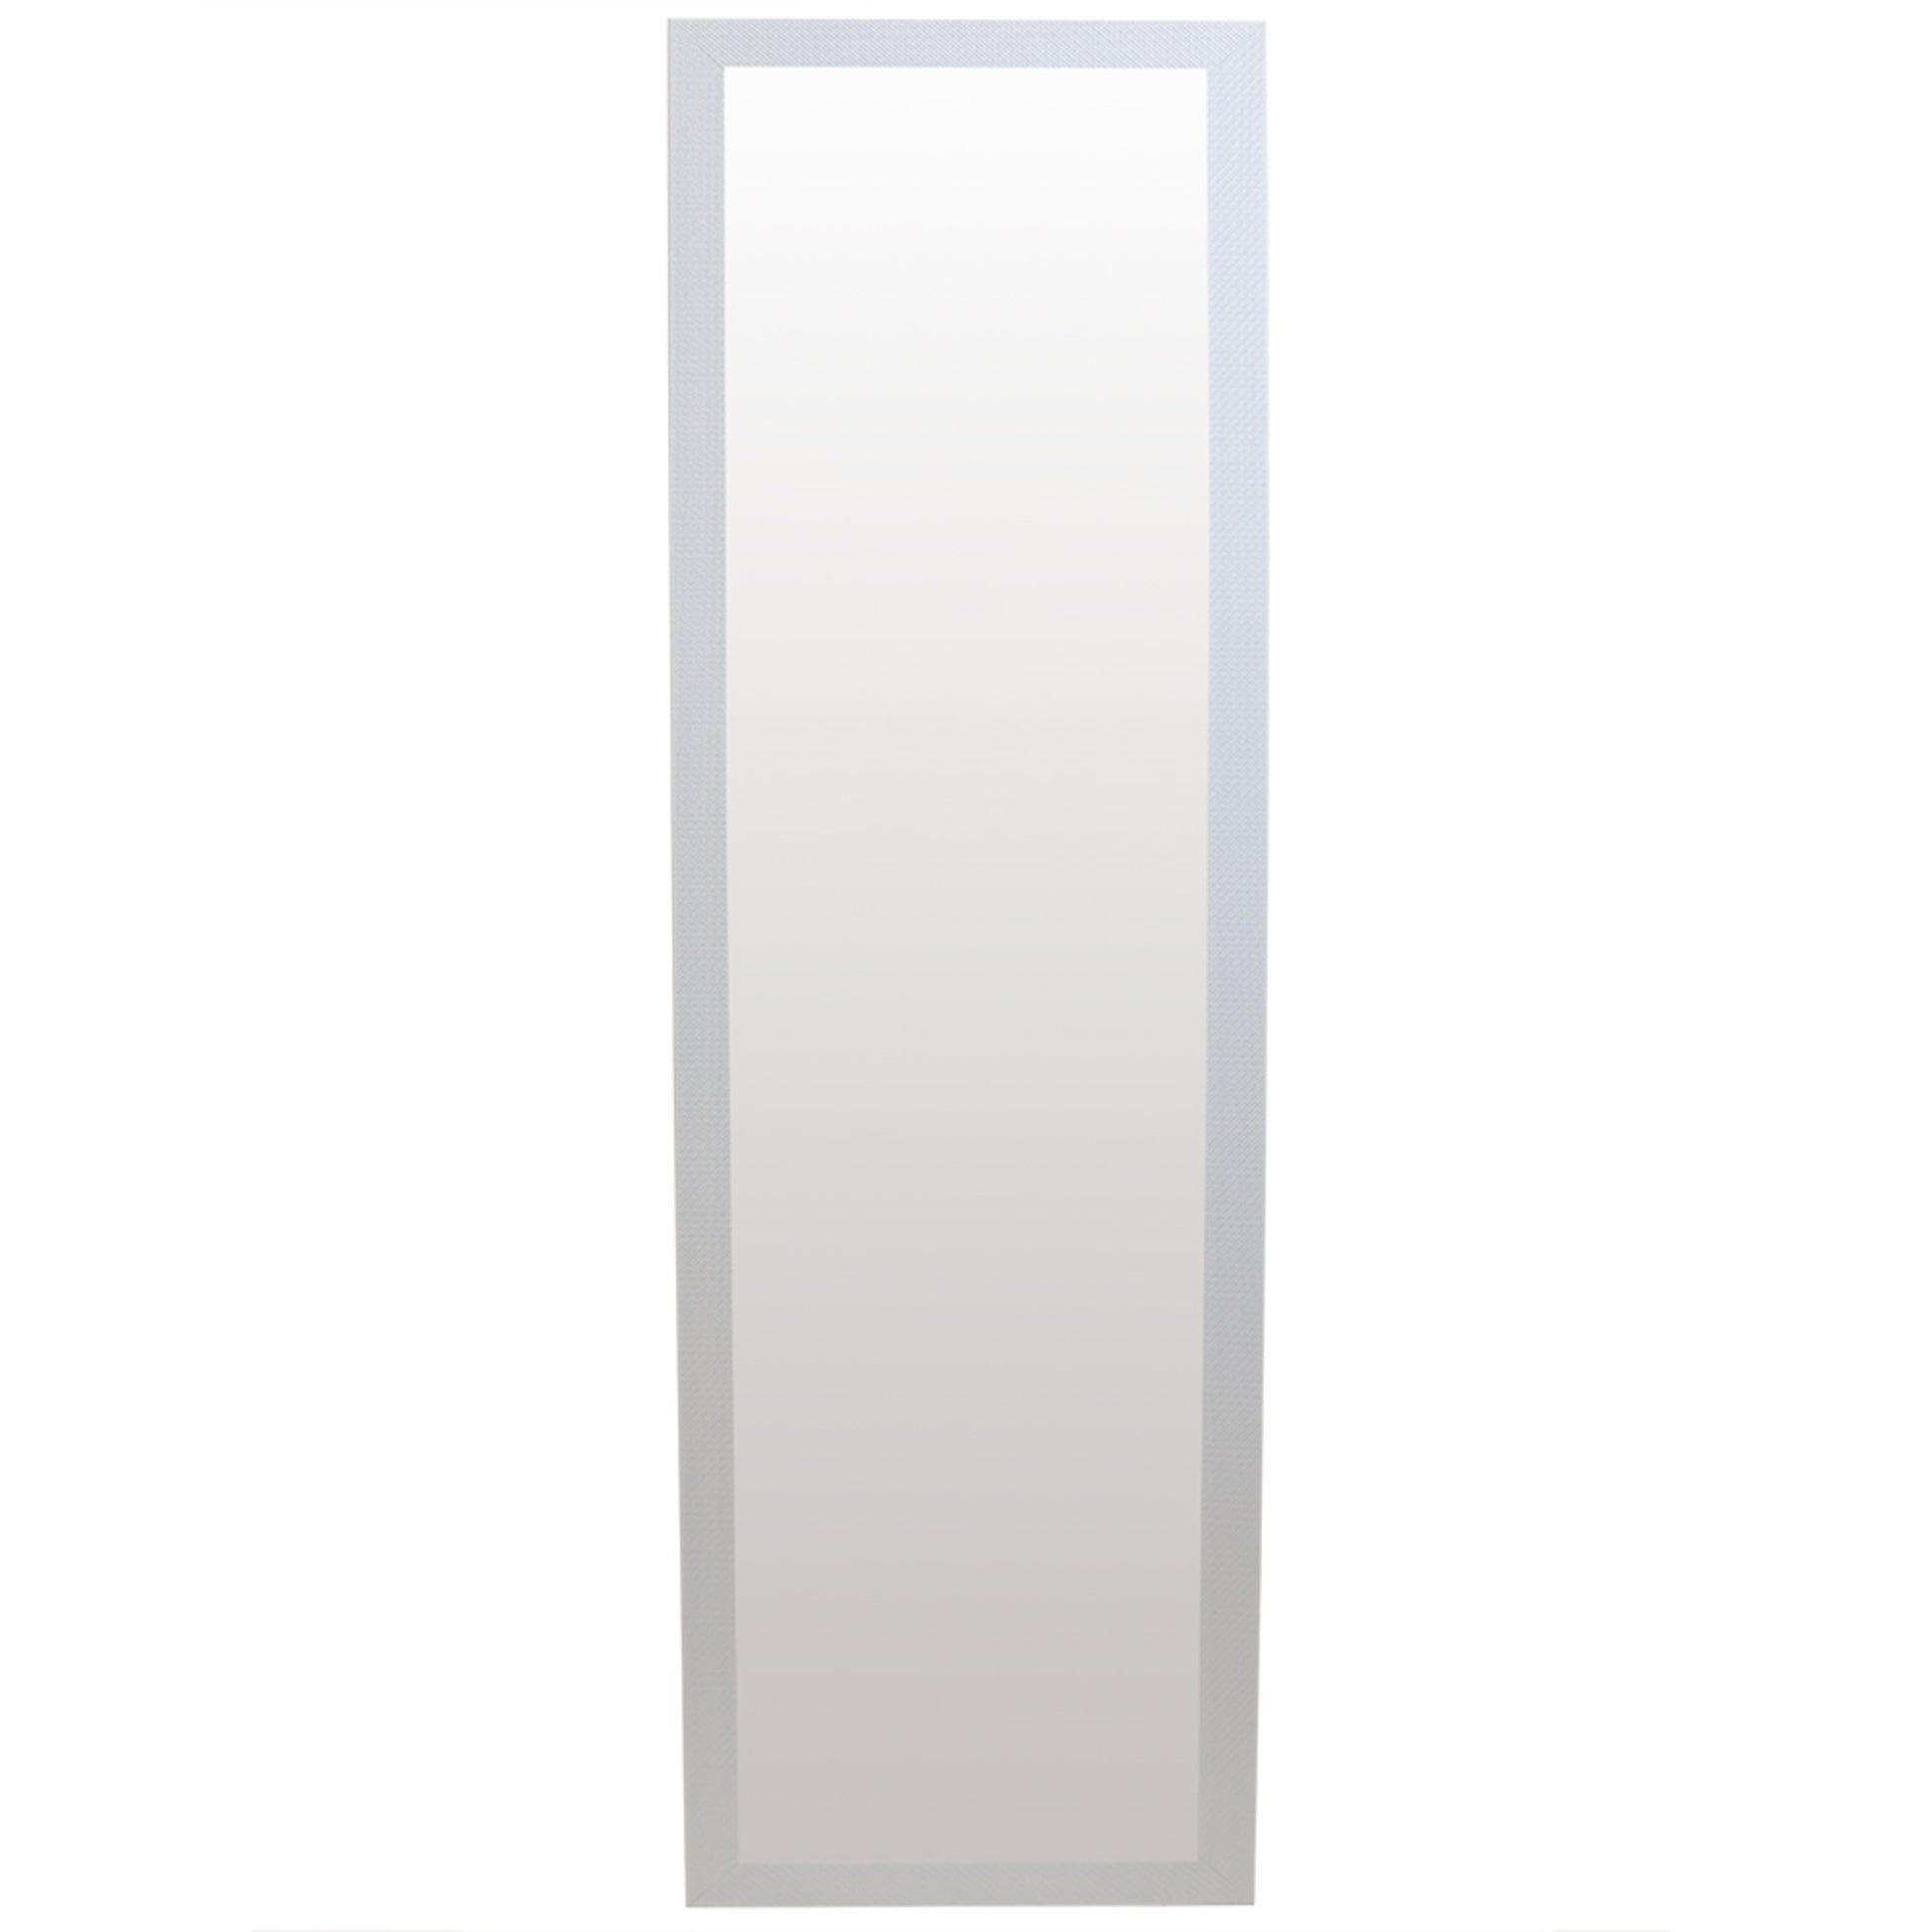 Home Basics Full Length Over the Door Mirror, White - White